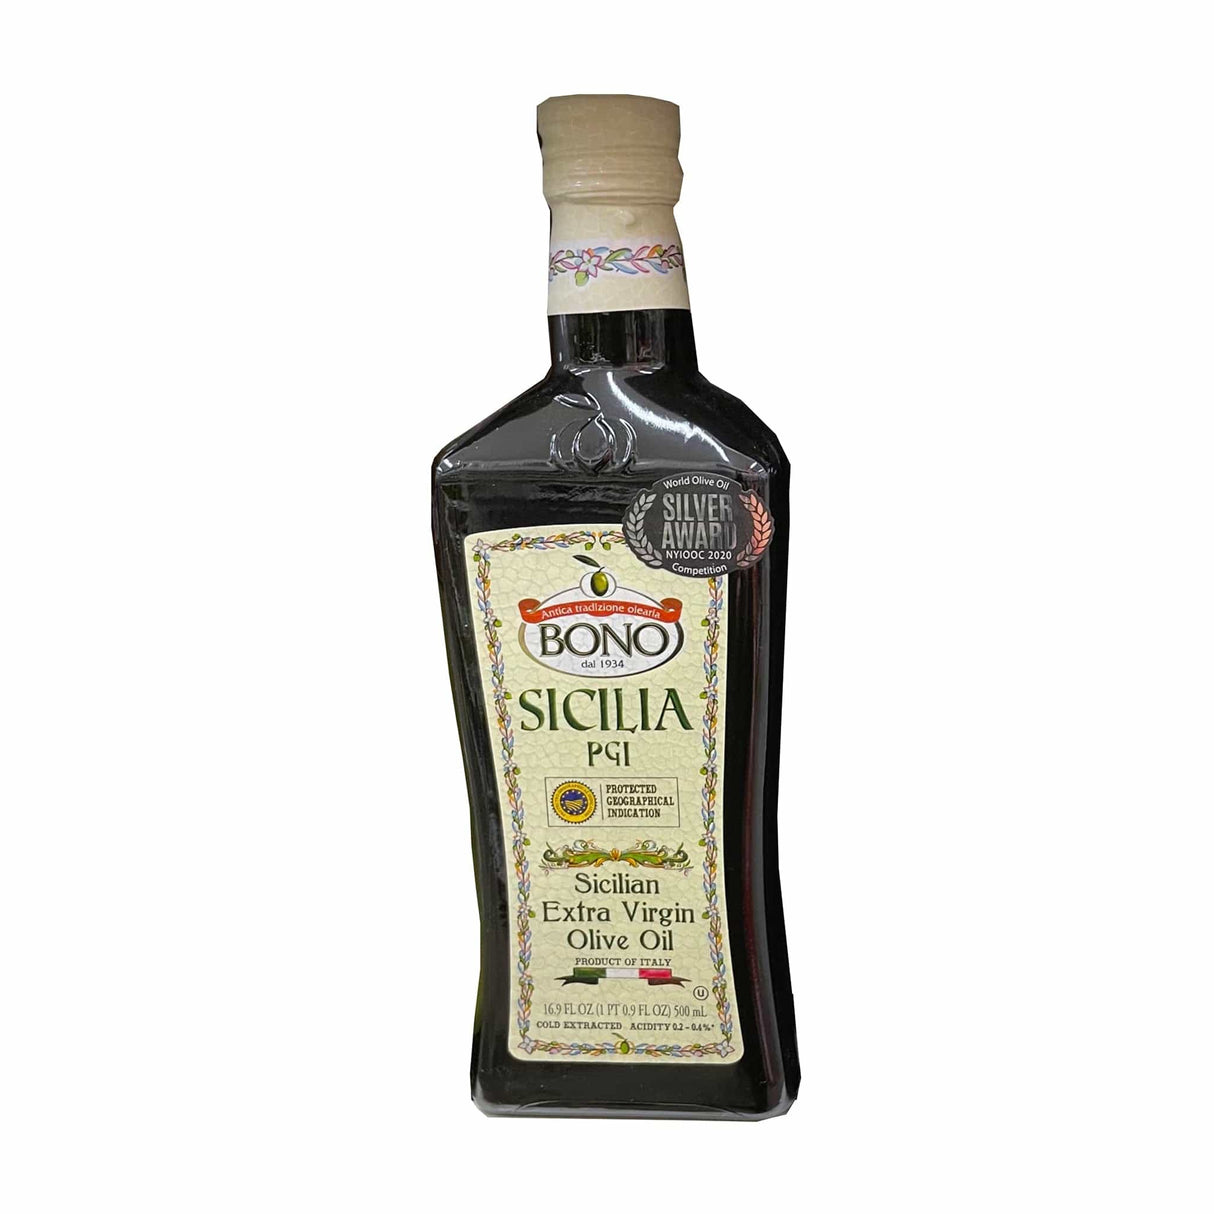 BONO Sicilia PGI Sicilian Extra Virgin Olive Oil